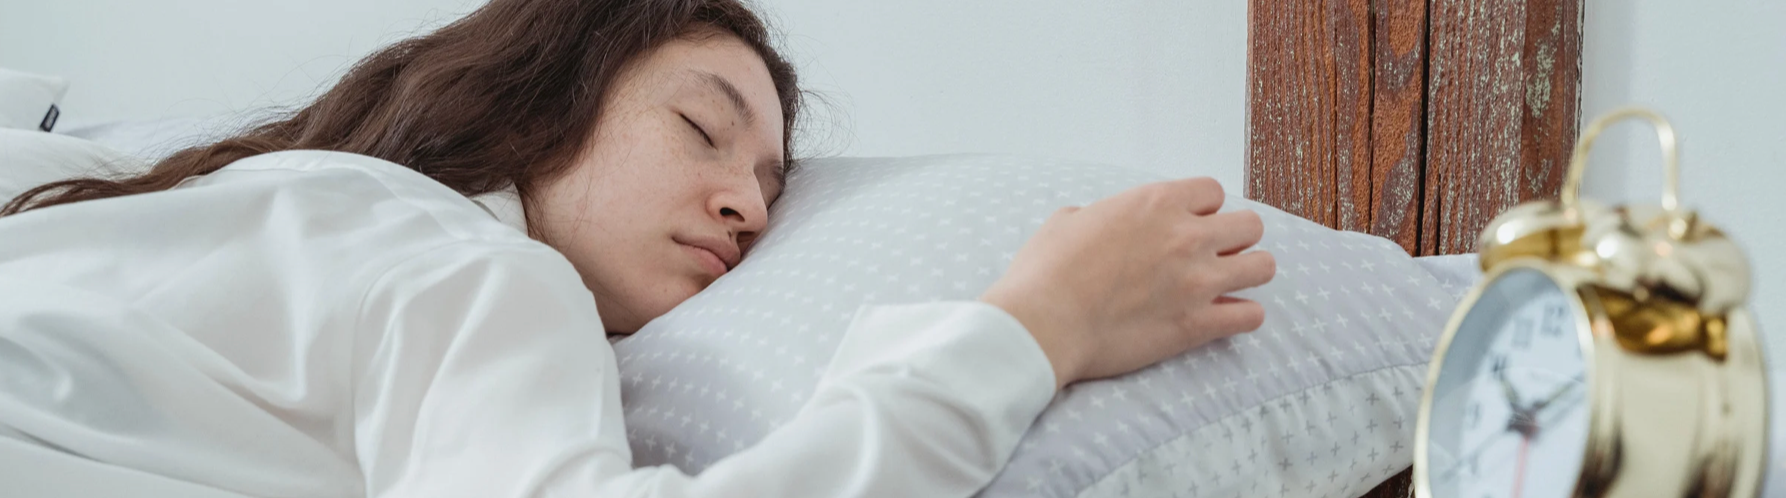 Blog invité par The Sleep Council : Comment s'endormir... et rester endormi !